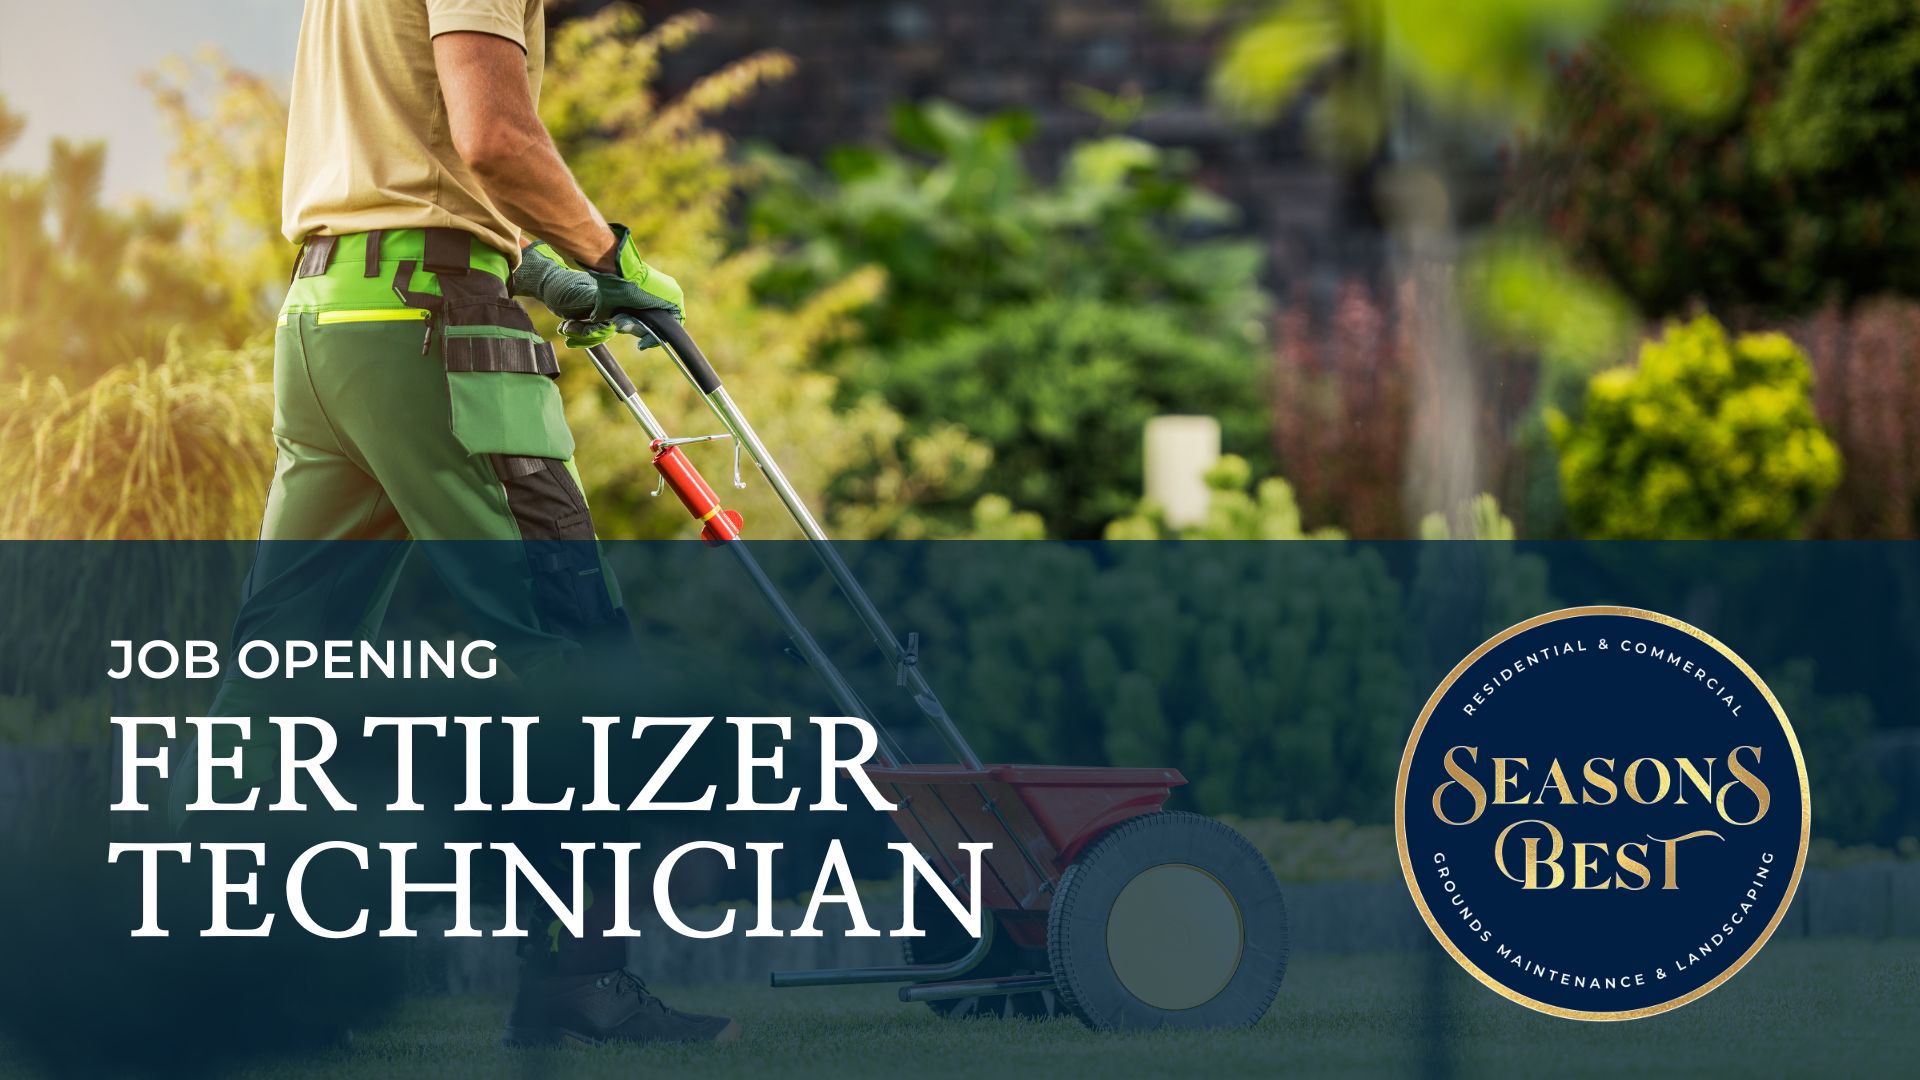 Fertilizer Technician Job Opening - Seasons Best Landscaping